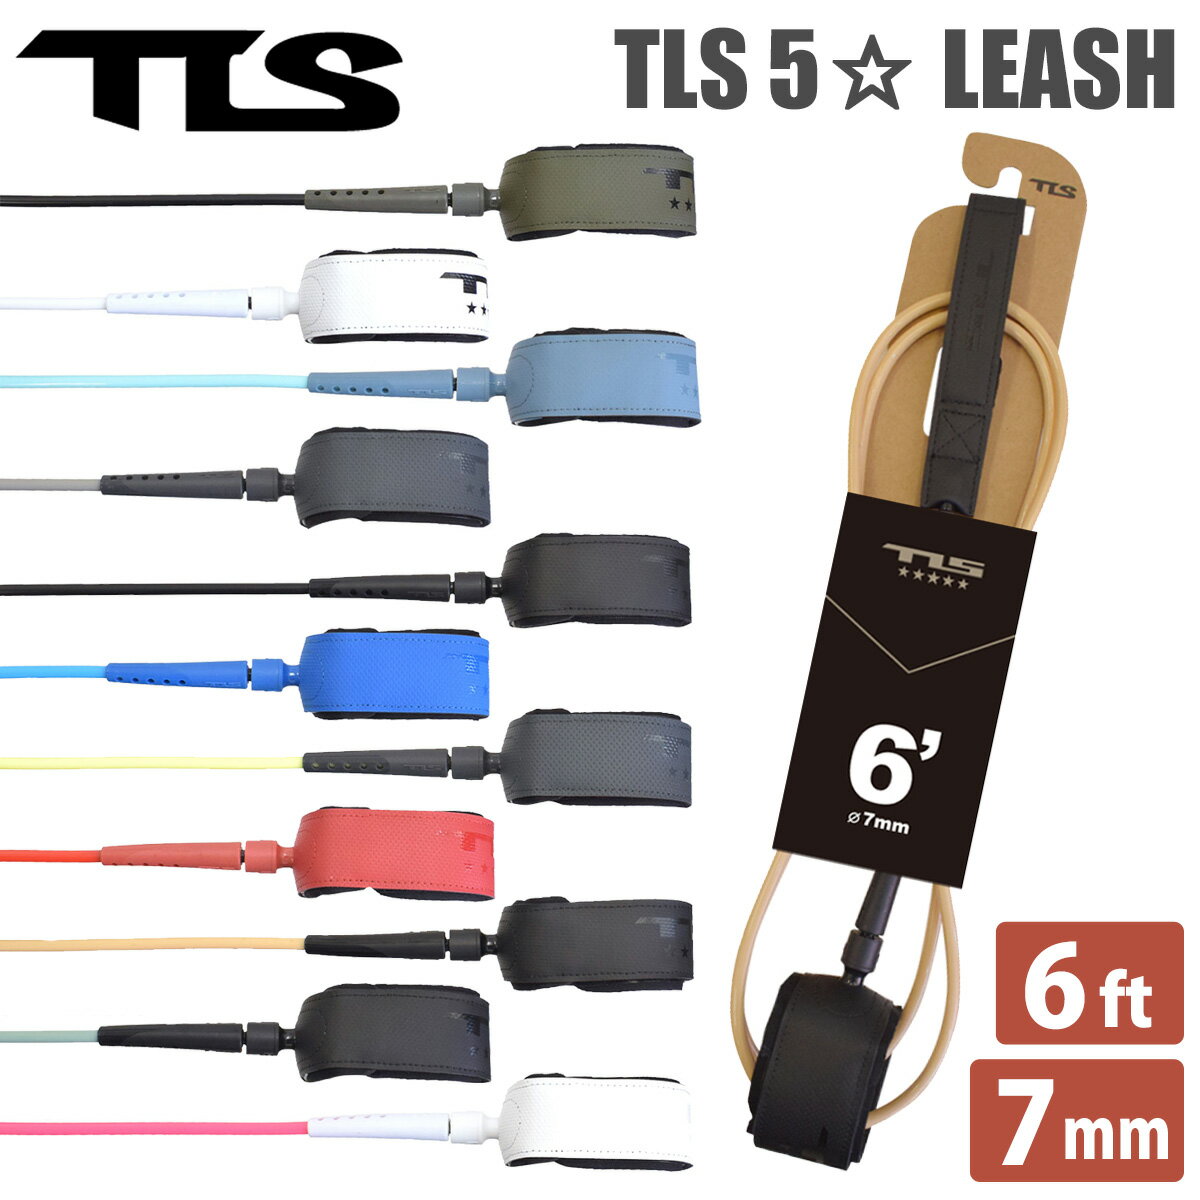 23 TOOLS TLS トゥールス ツールス リーシュコード TLS 5☆ FIVE STAR LEASH 6ft 7mm リッシュコード パワーコード サーフィン ショートボード 日本正規品